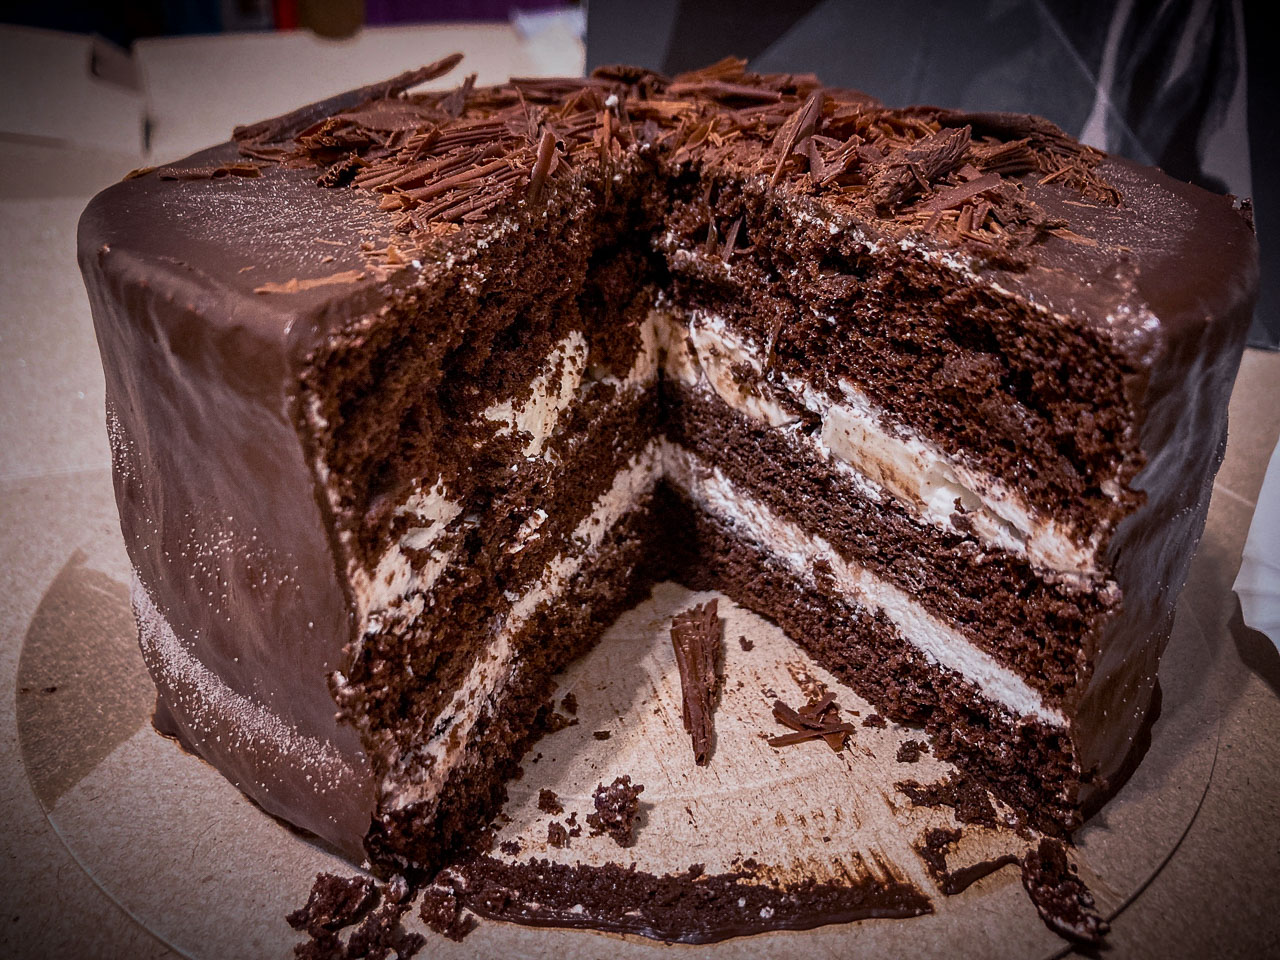 台中美食,台中甜點,台中巧克力蛋糕,台中可可蛋糕,台中蛋糕,讓一糖可可蛋糕專賣店,台中讓一糖可可蛋糕,台中讓一糖